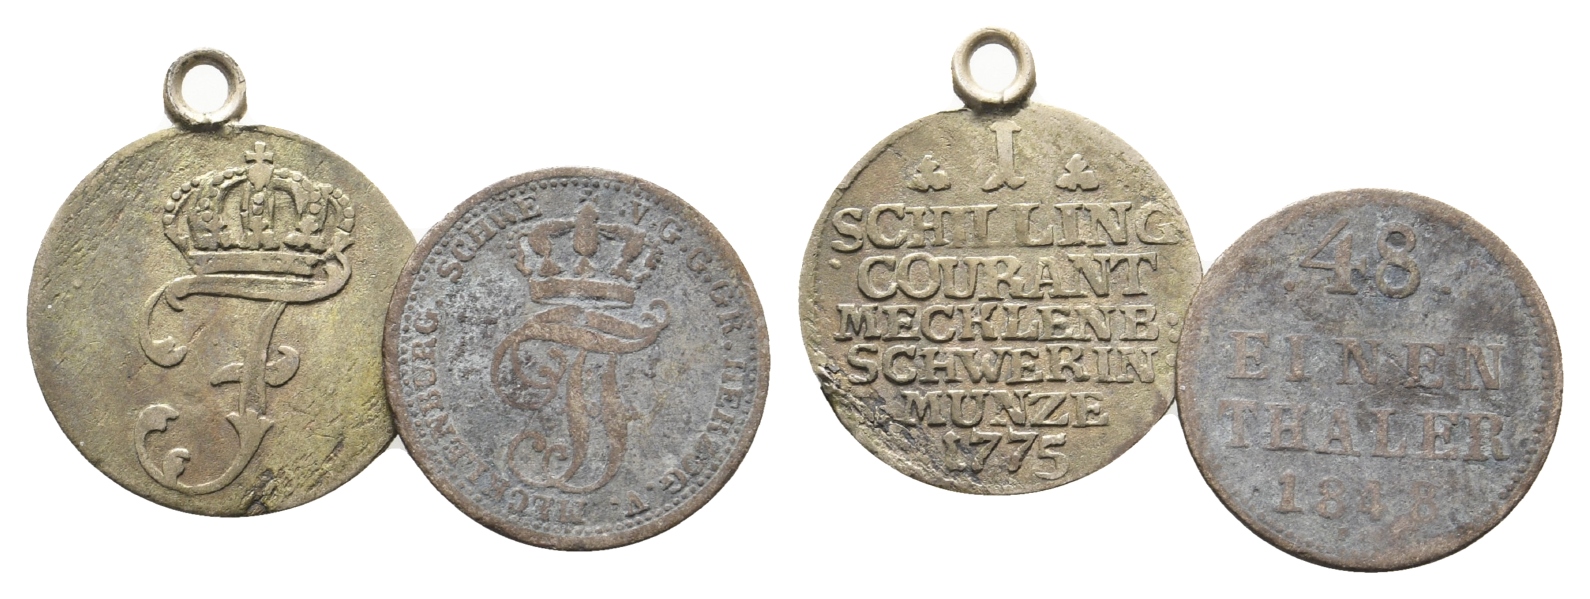  Altdeutschland,2 Kleinmünzen 1875/48, 1 gehenkelt   